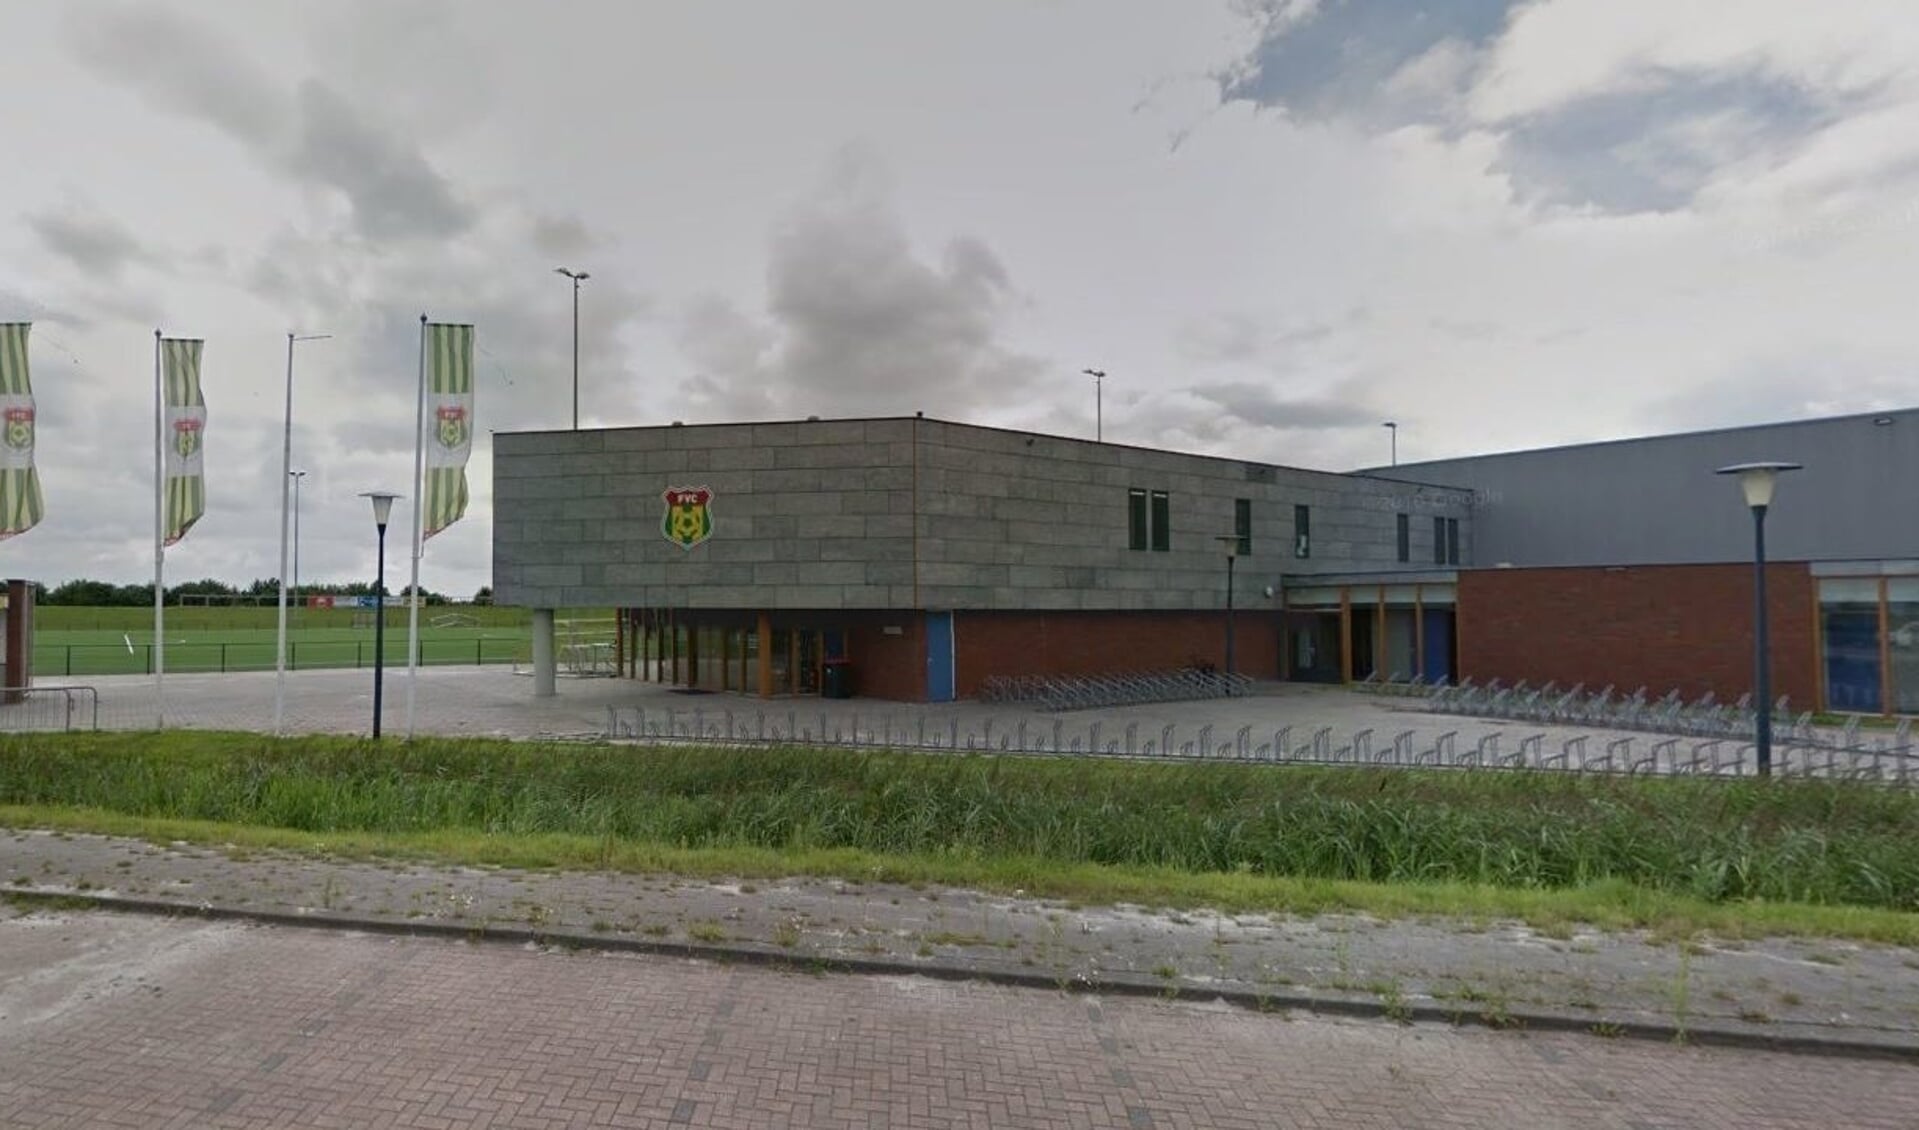 Het complex van Leeuwarder voetbalclub FVC.